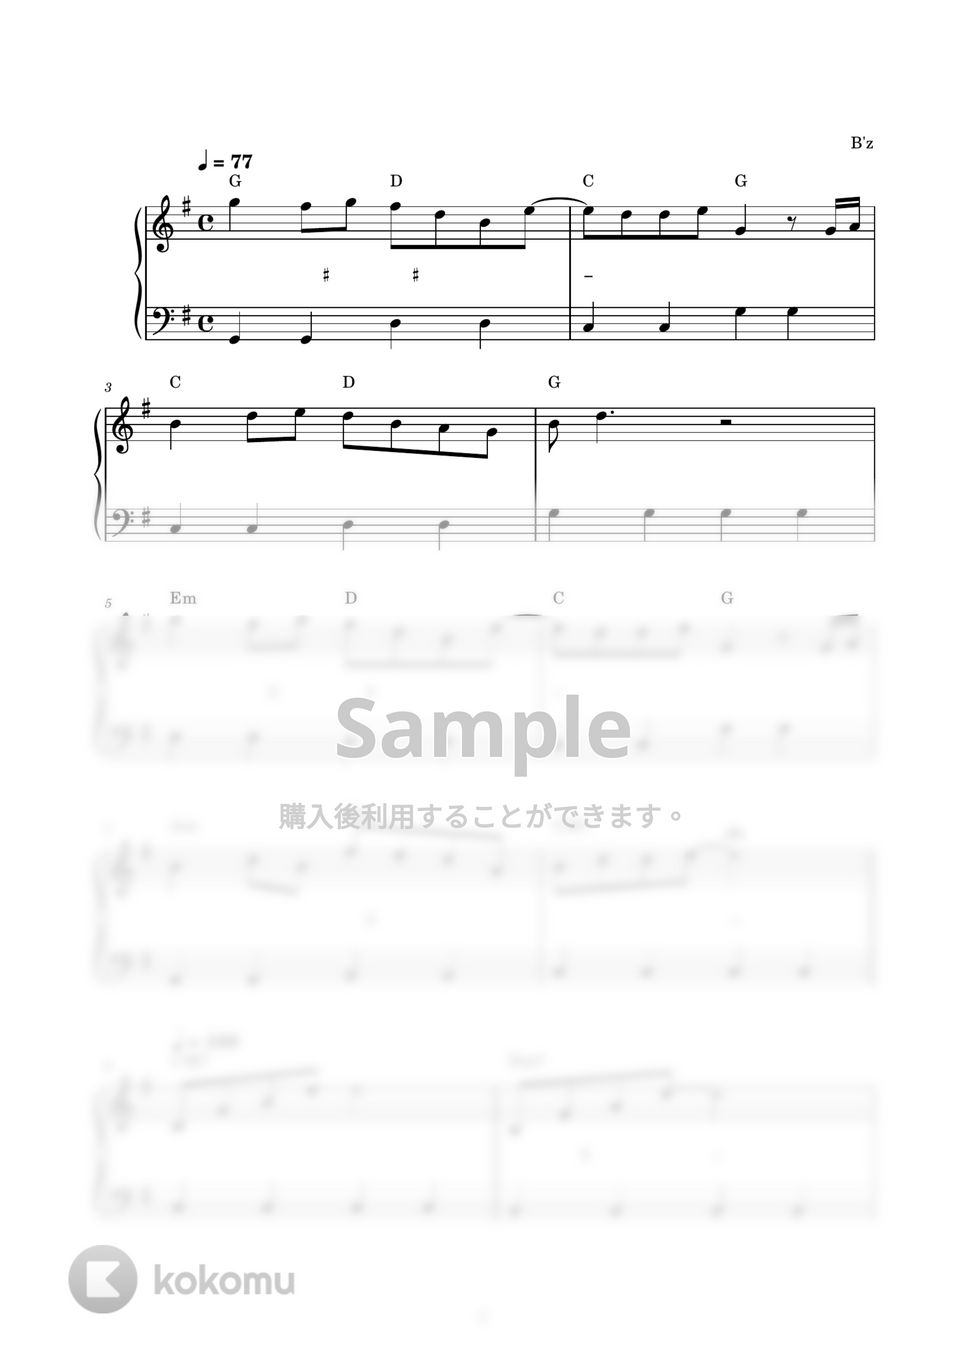 B’ｚ - いつかのメリークリスマス (ピアノ楽譜 / かんたん両手 / 歌詞付き / ドレミ付き / 初心者向き) by piano.tokyo